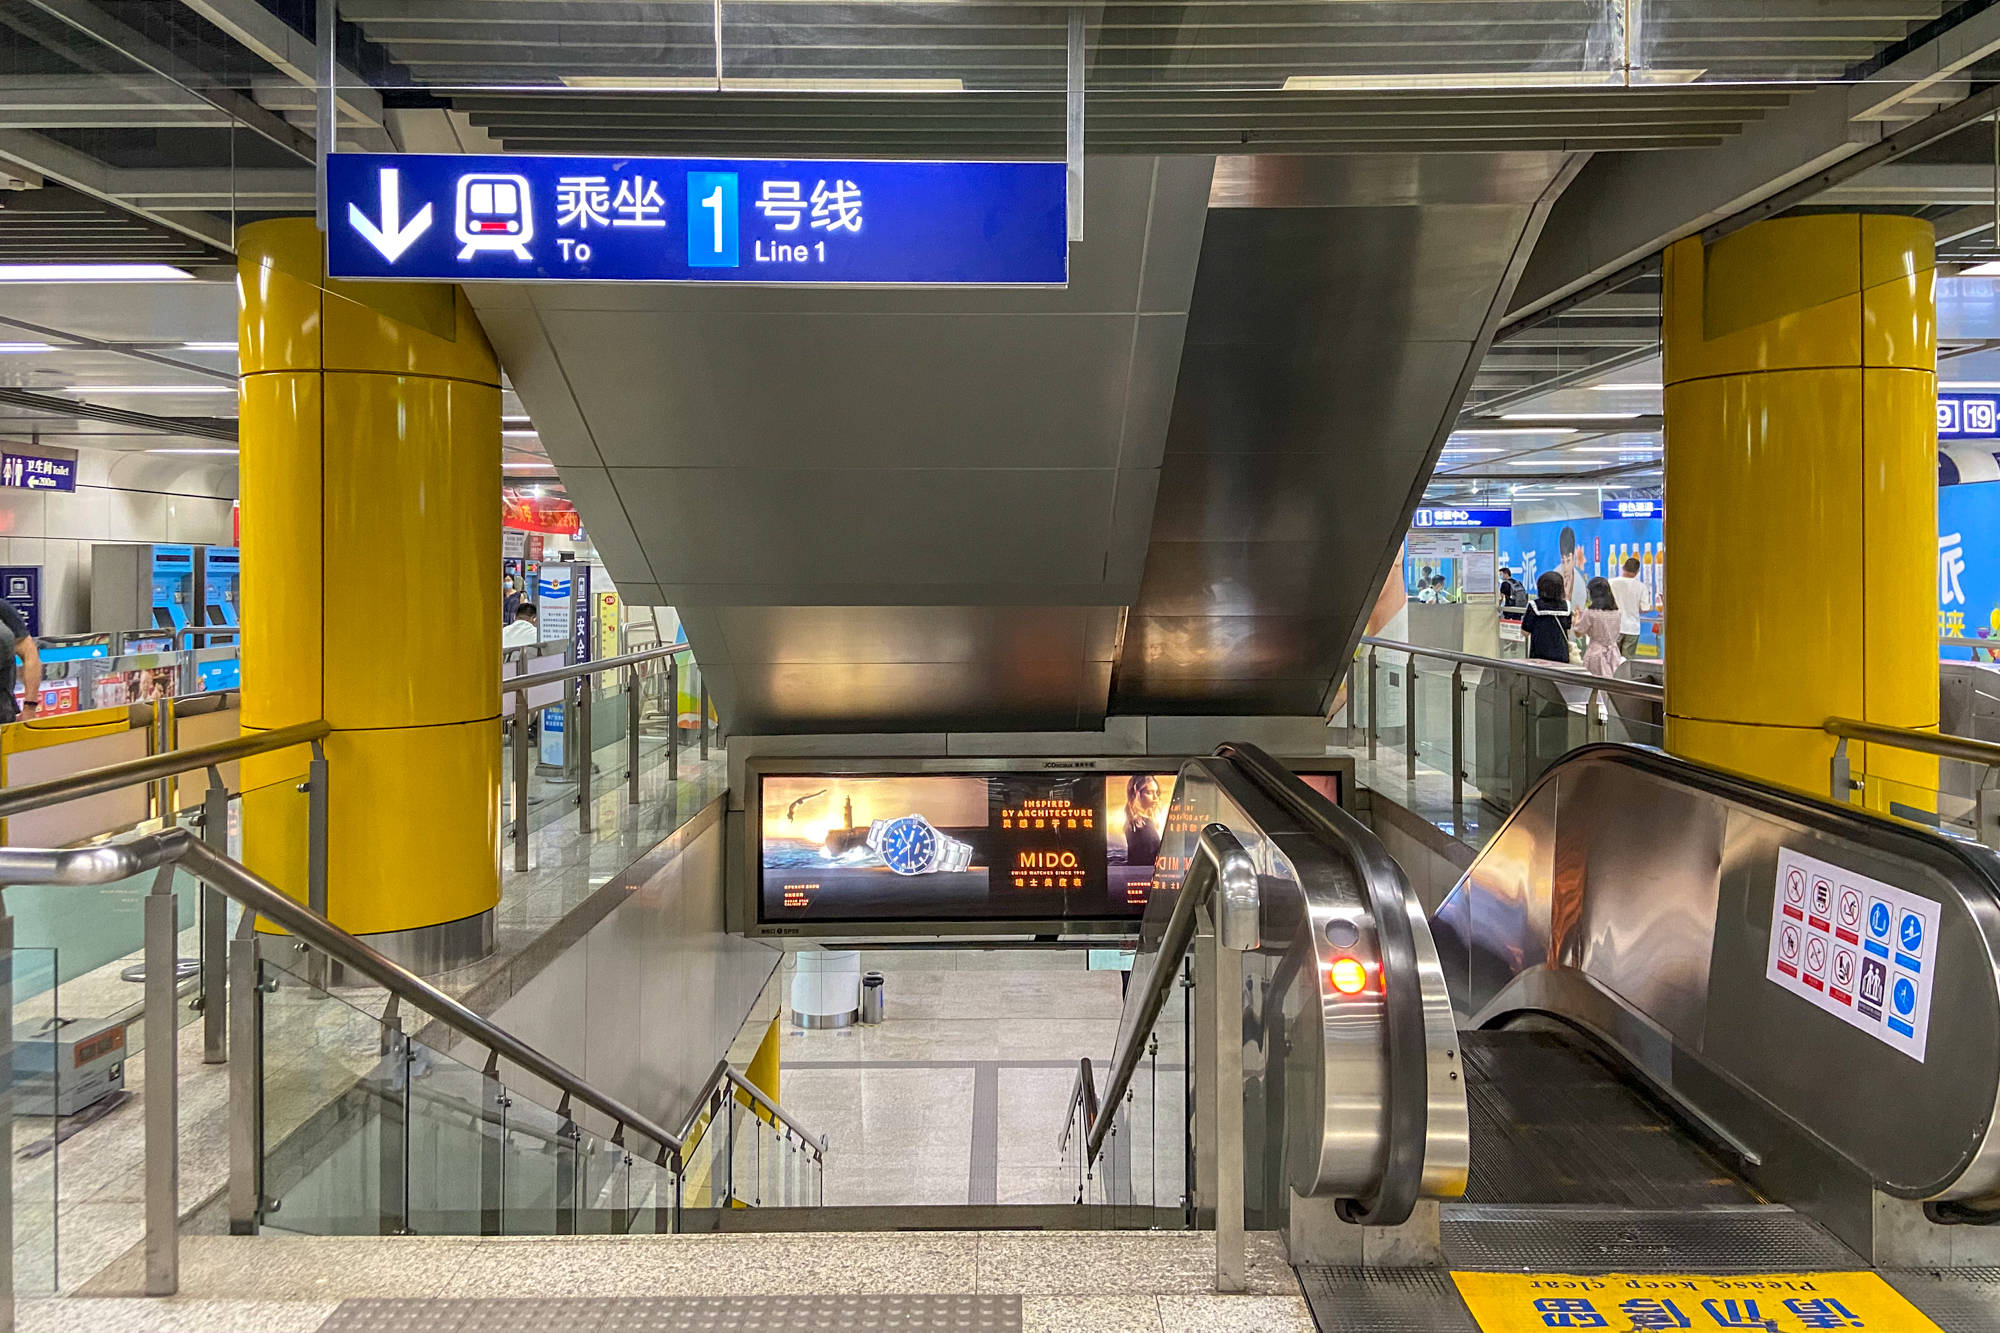 原创实拍南京新街口地铁站建筑面积765万平方米拥有24个出入口